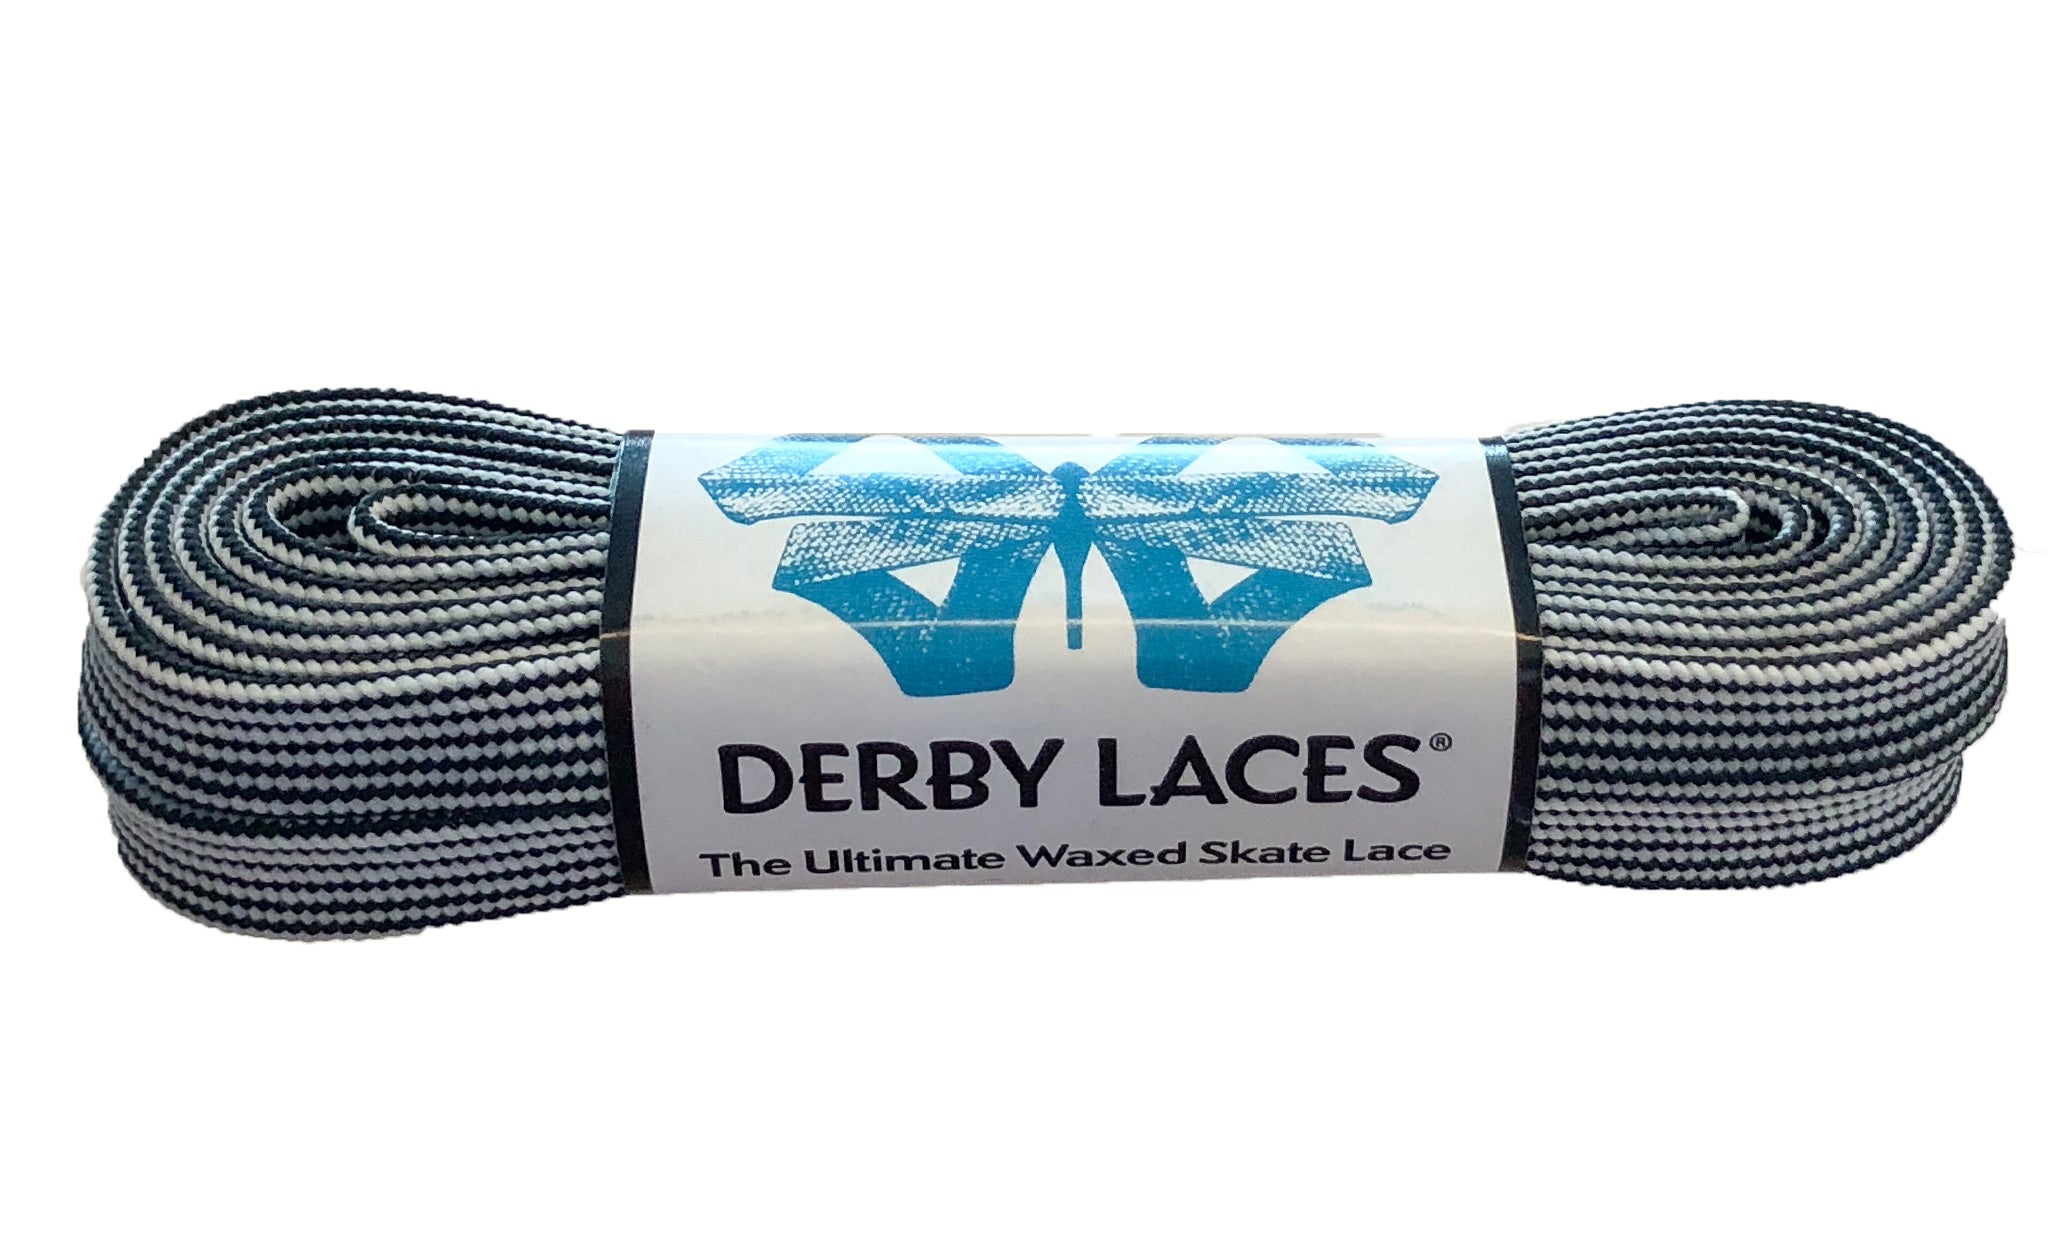 Derby Laces CORE 60”